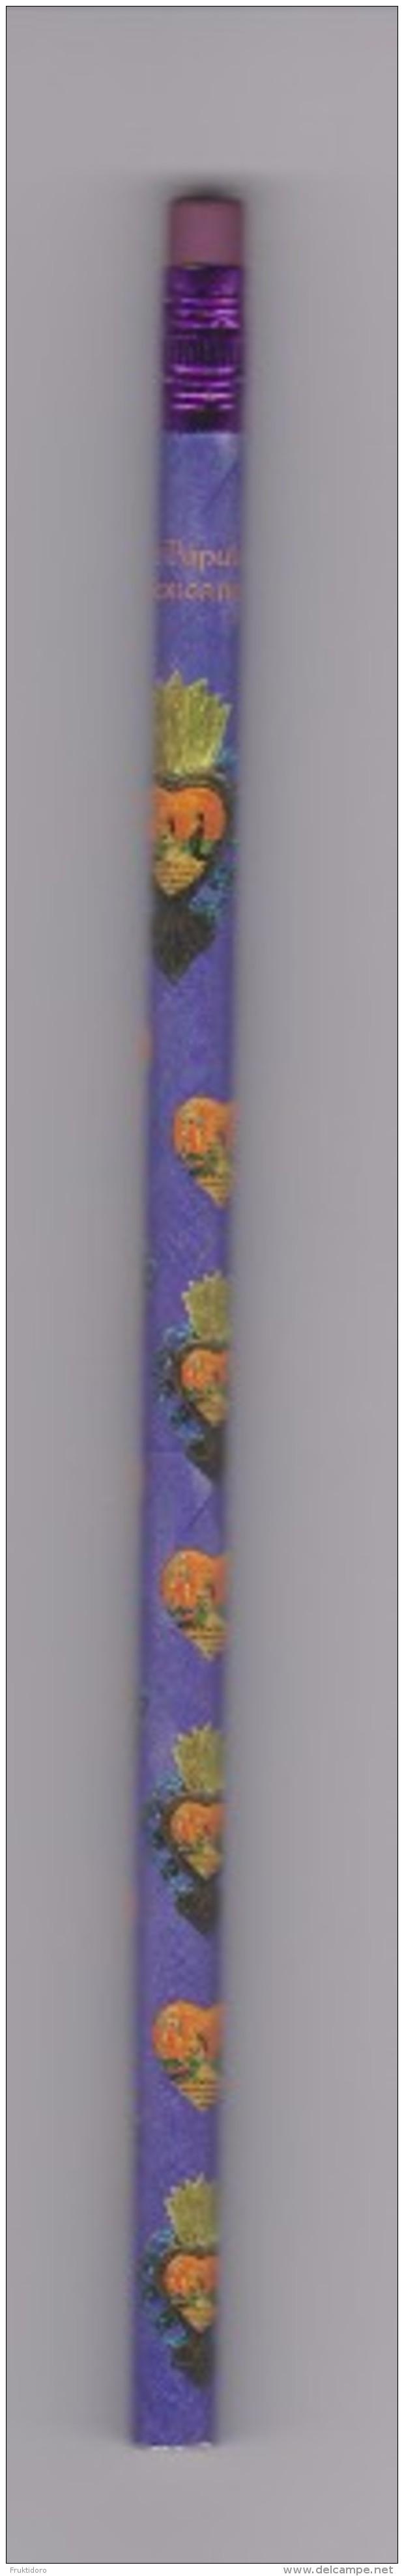 Bookmark - Marque-page - Marcapágina - Pencil Pop Art From Mexico - Heart - Museo De Arte Popular - Bladwijzers